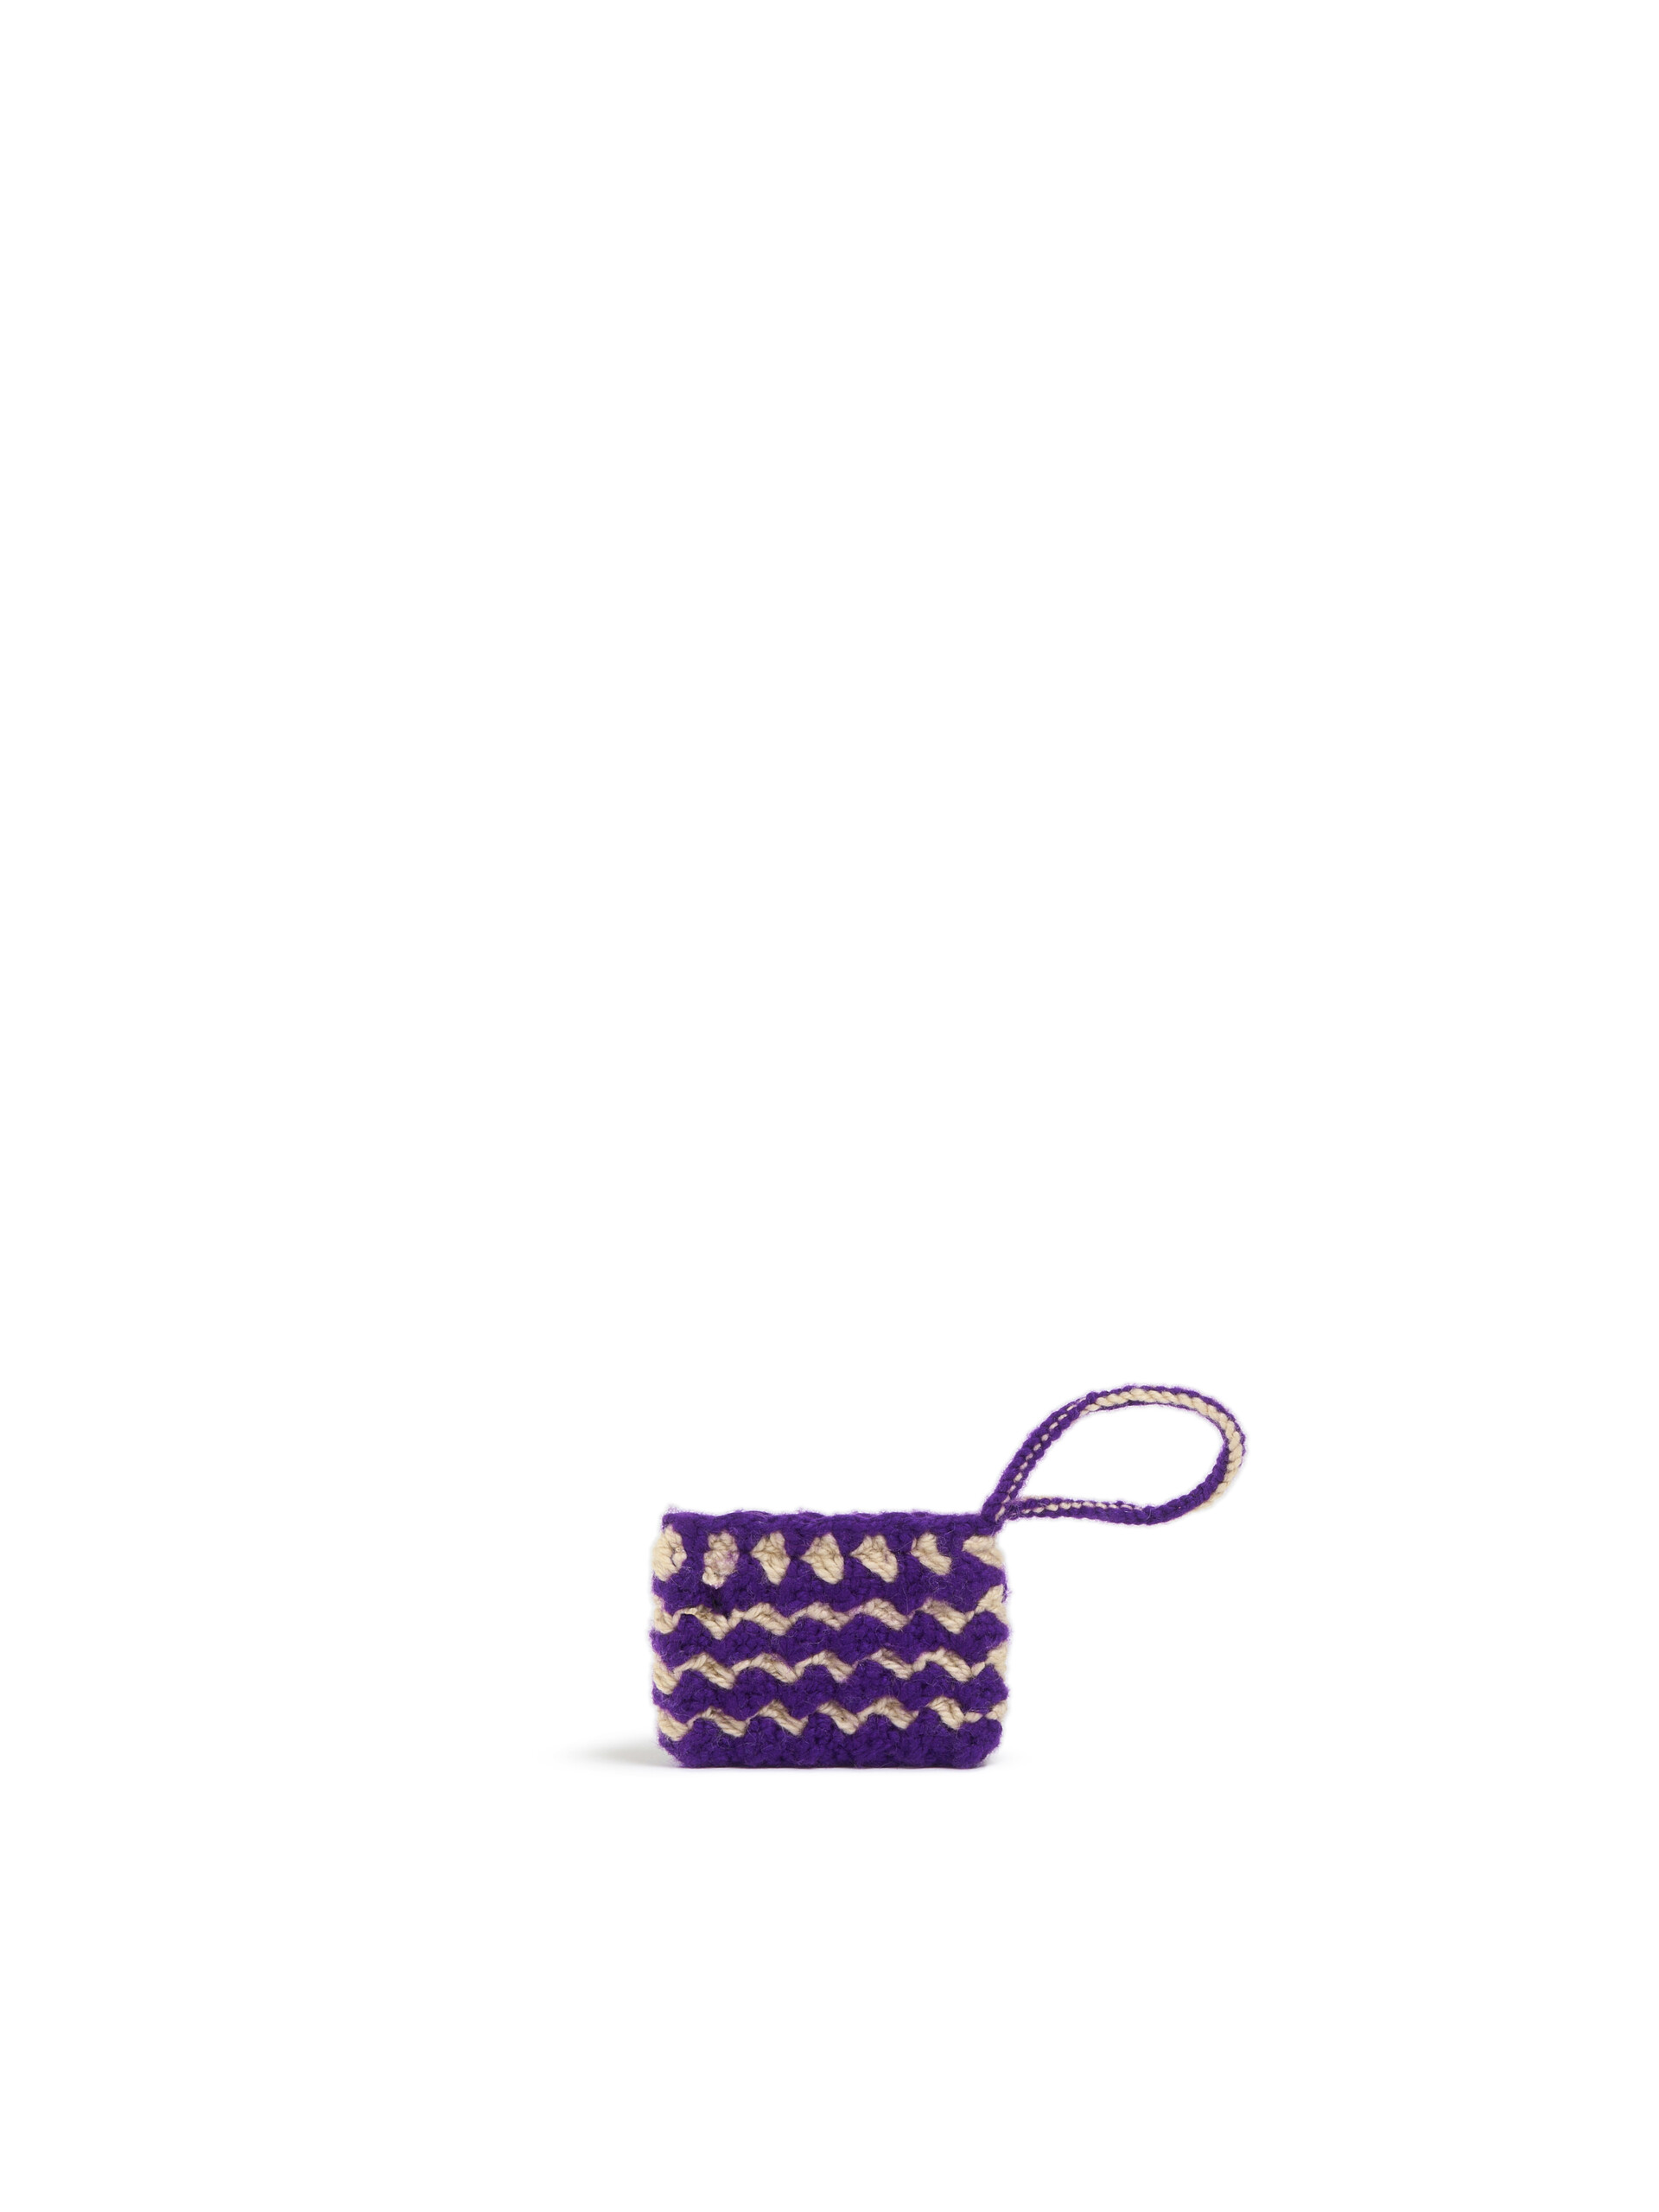 Mini-pochette Marni Market Chessboard noire réalisée au crochet - Accessoires - Image 2